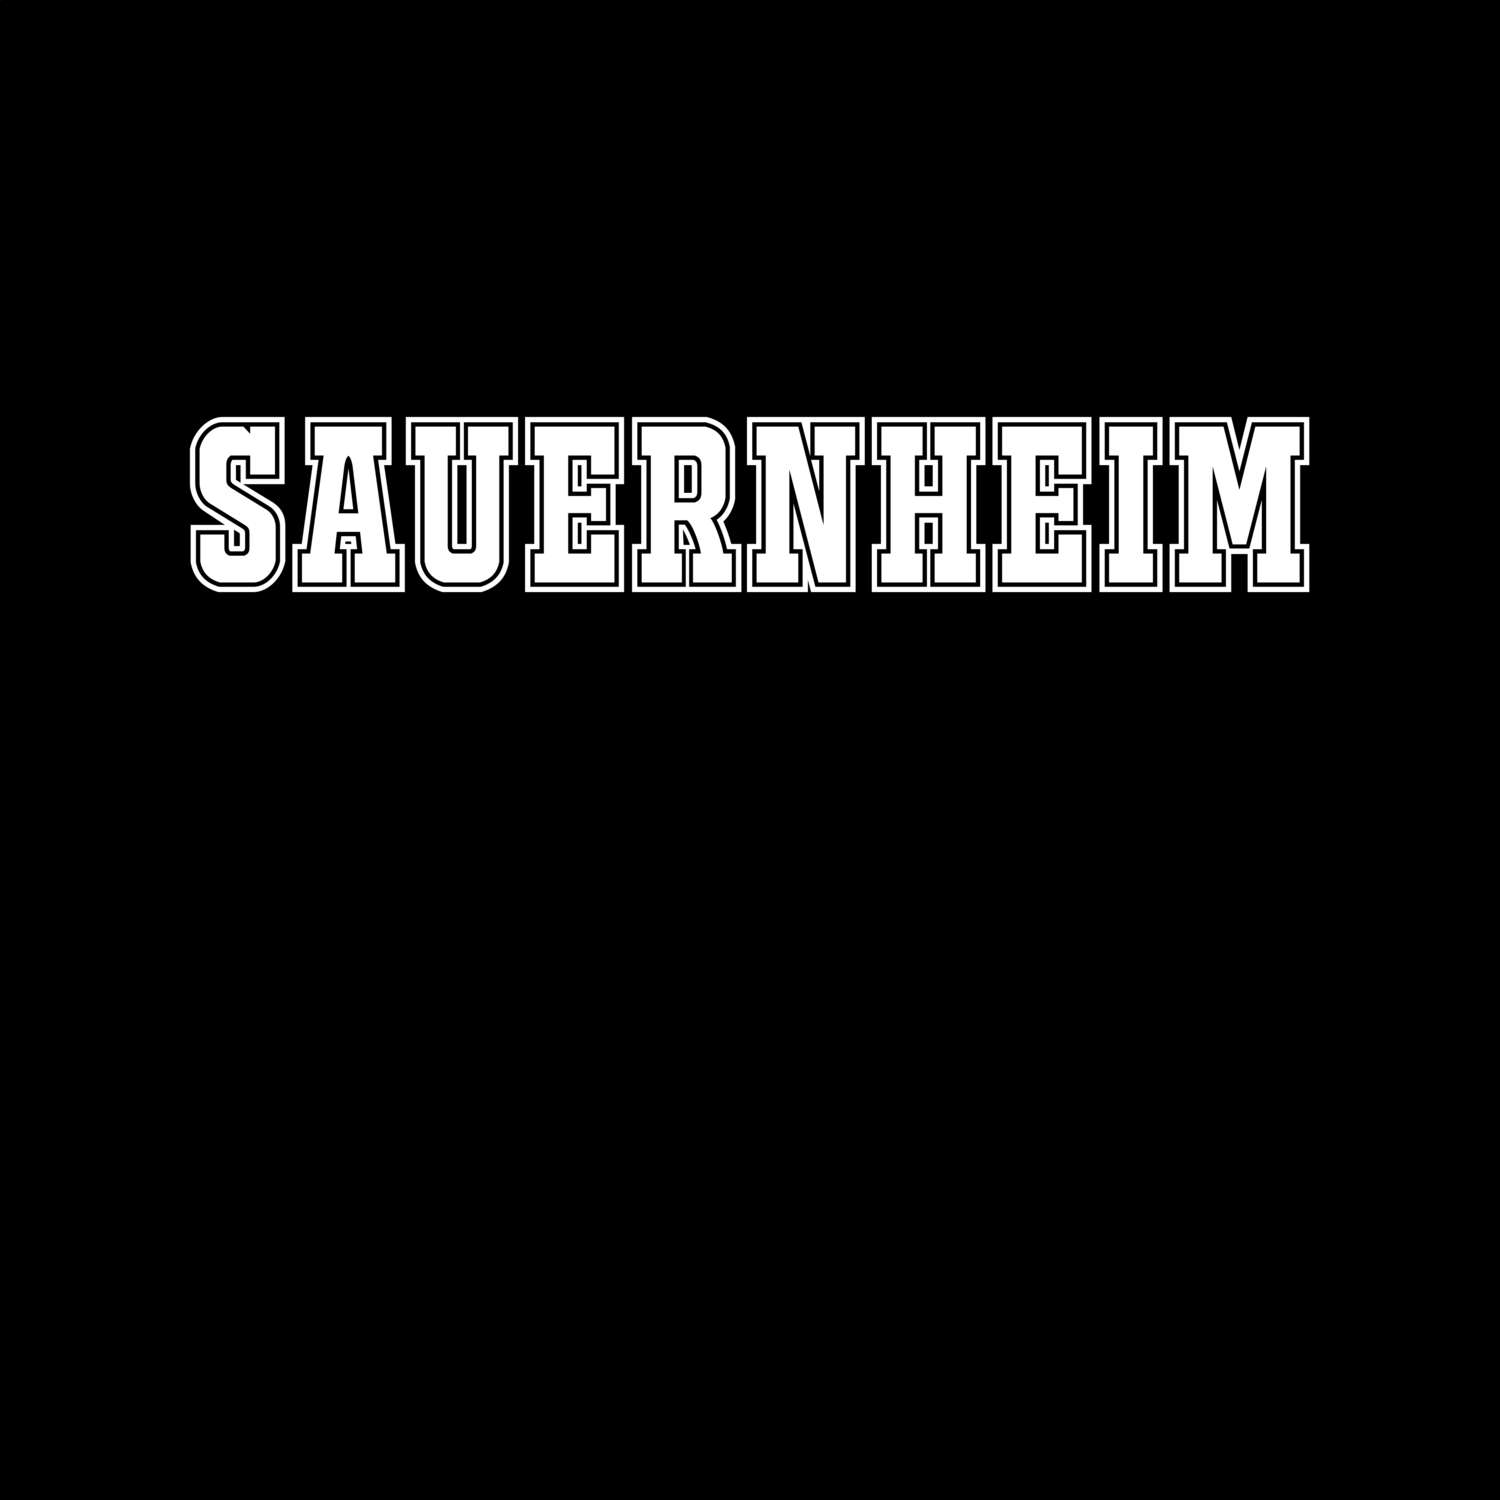 Sauernheim T-Shirt »Classic«